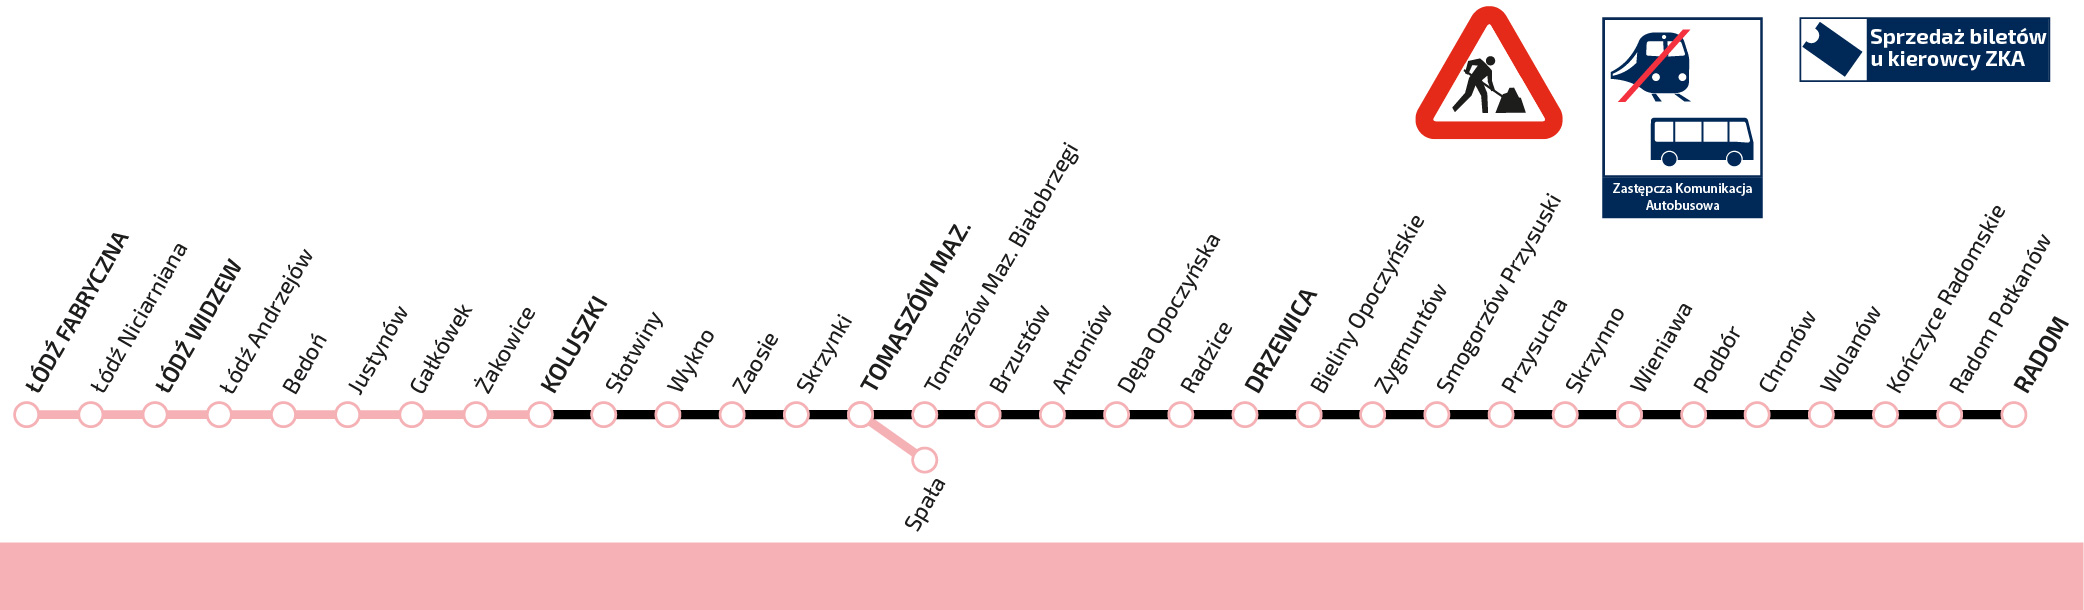 Schemat pokazujący trasę Łódź Tomaszów Mazowiecki Drzewica Radom